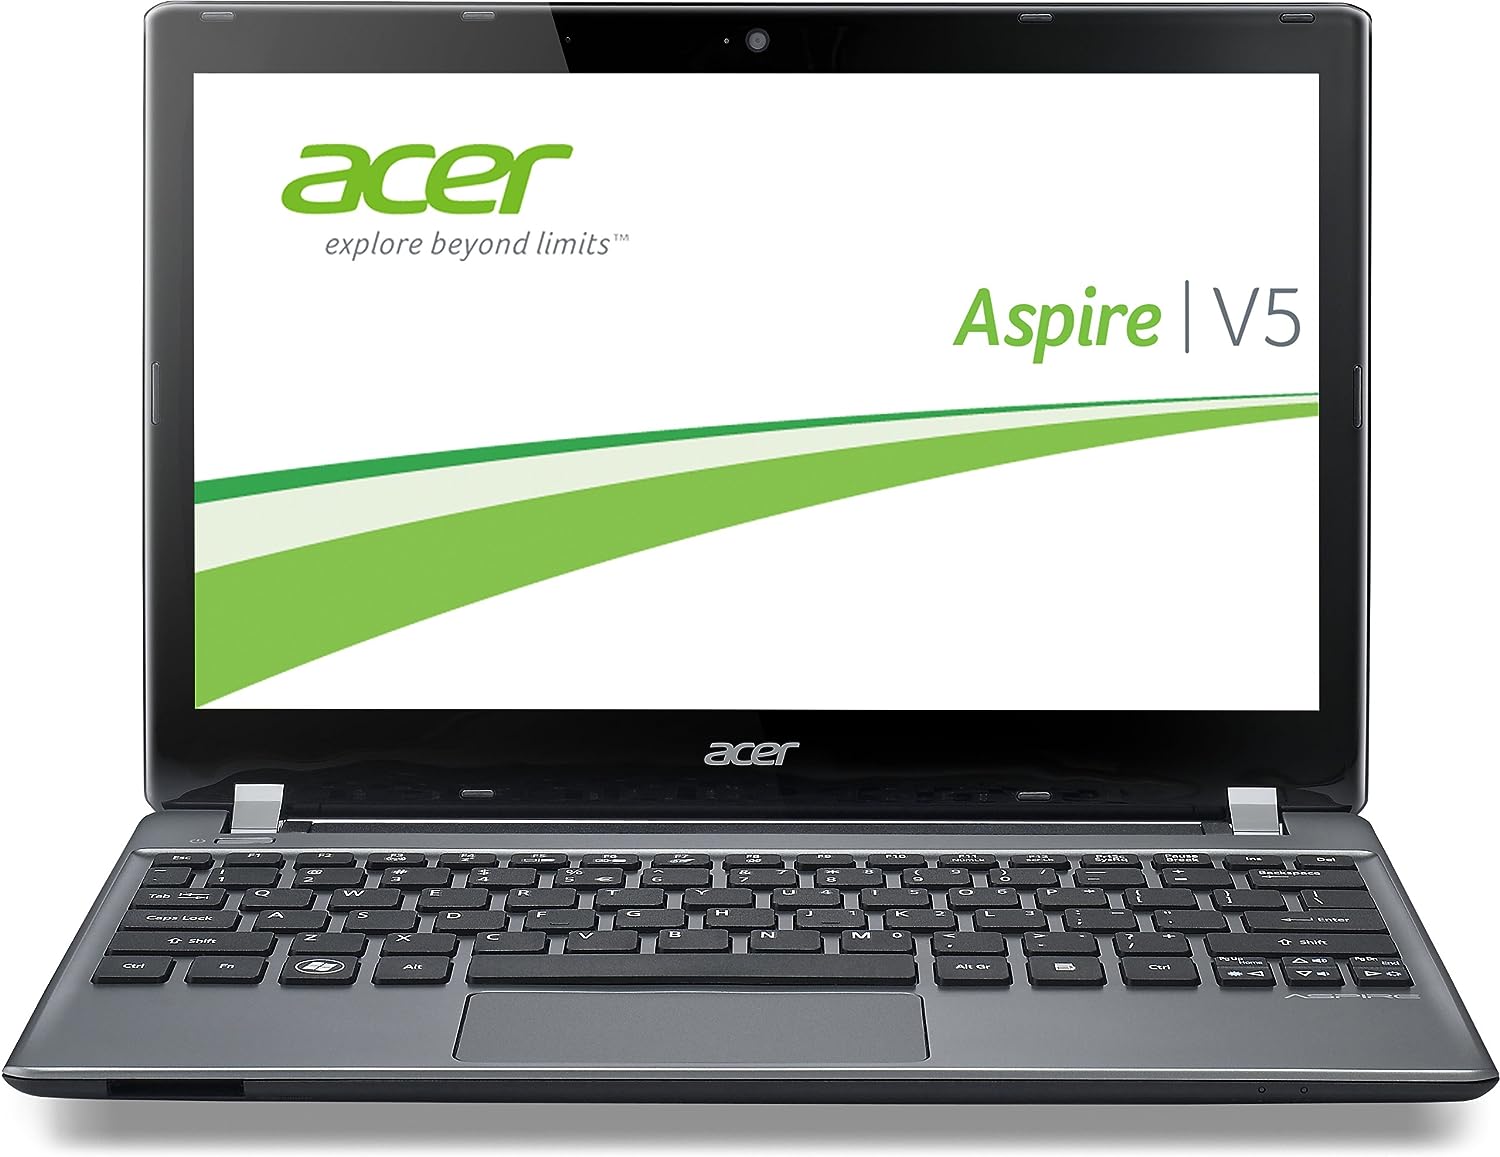 Acer Aspire V5-473PG Notebook